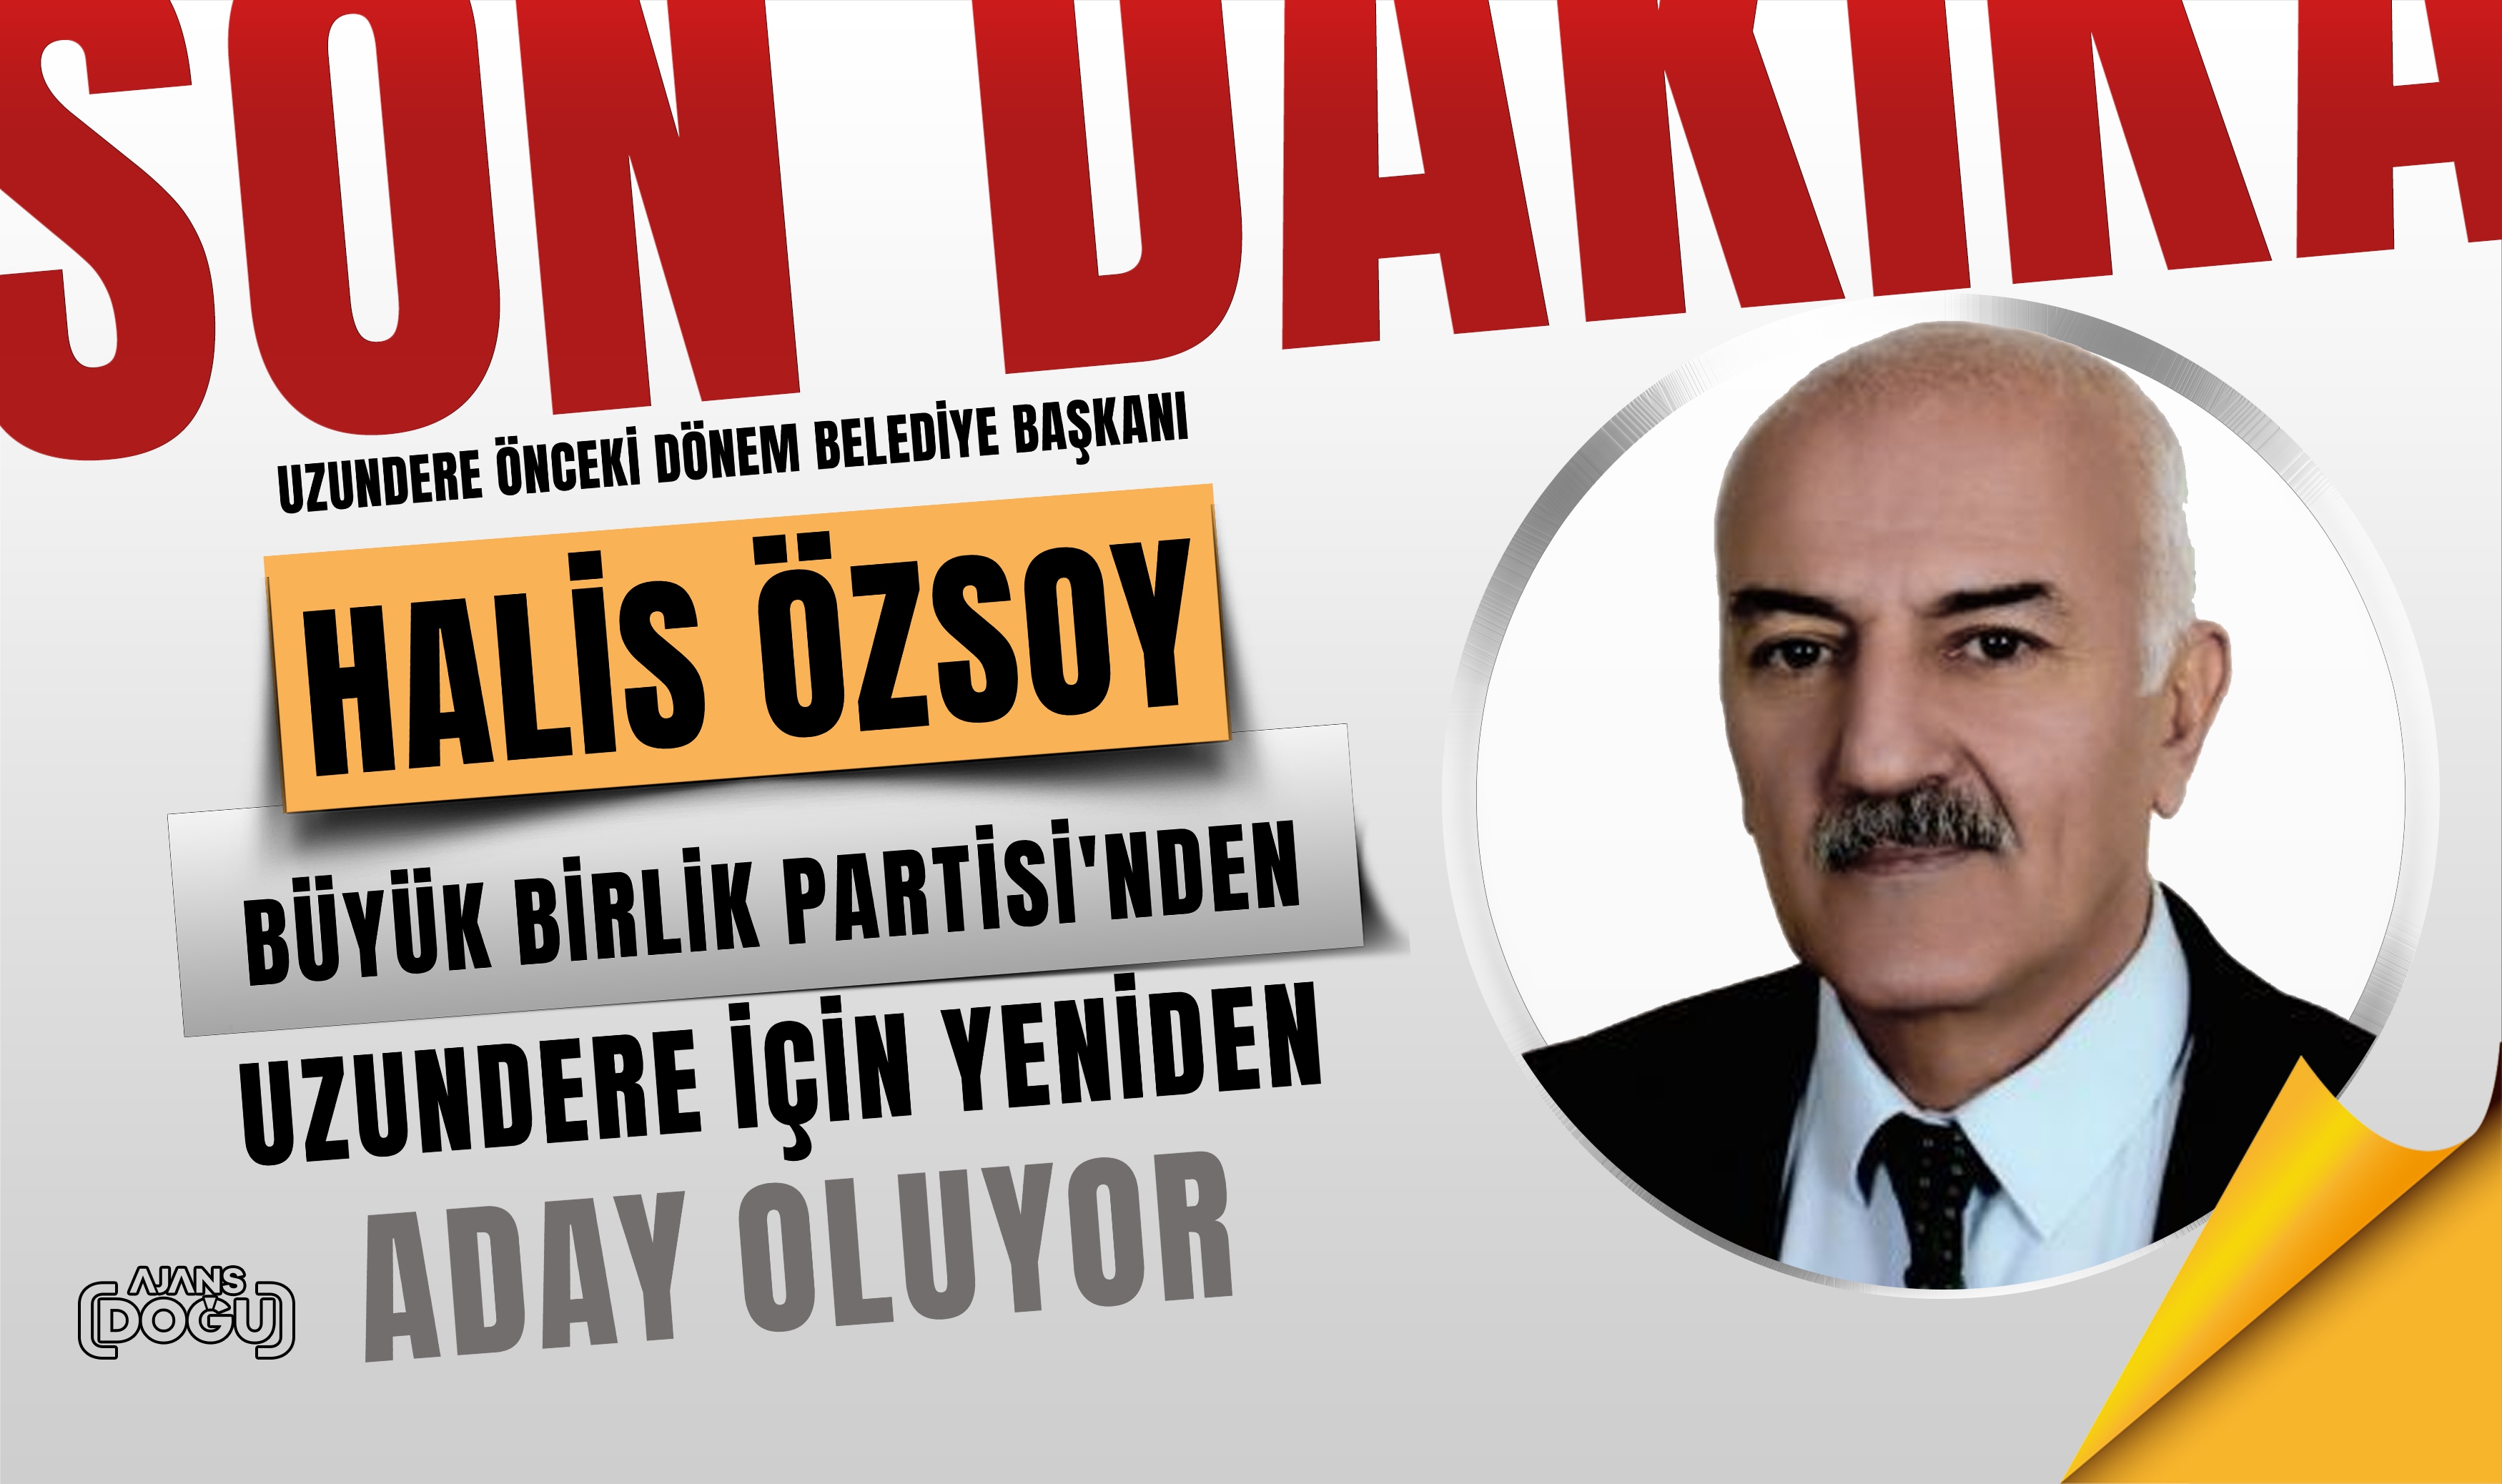 Uzundere önceki dönem Belediye Başkanı Halis Özsoy BBP'den aday oluyor